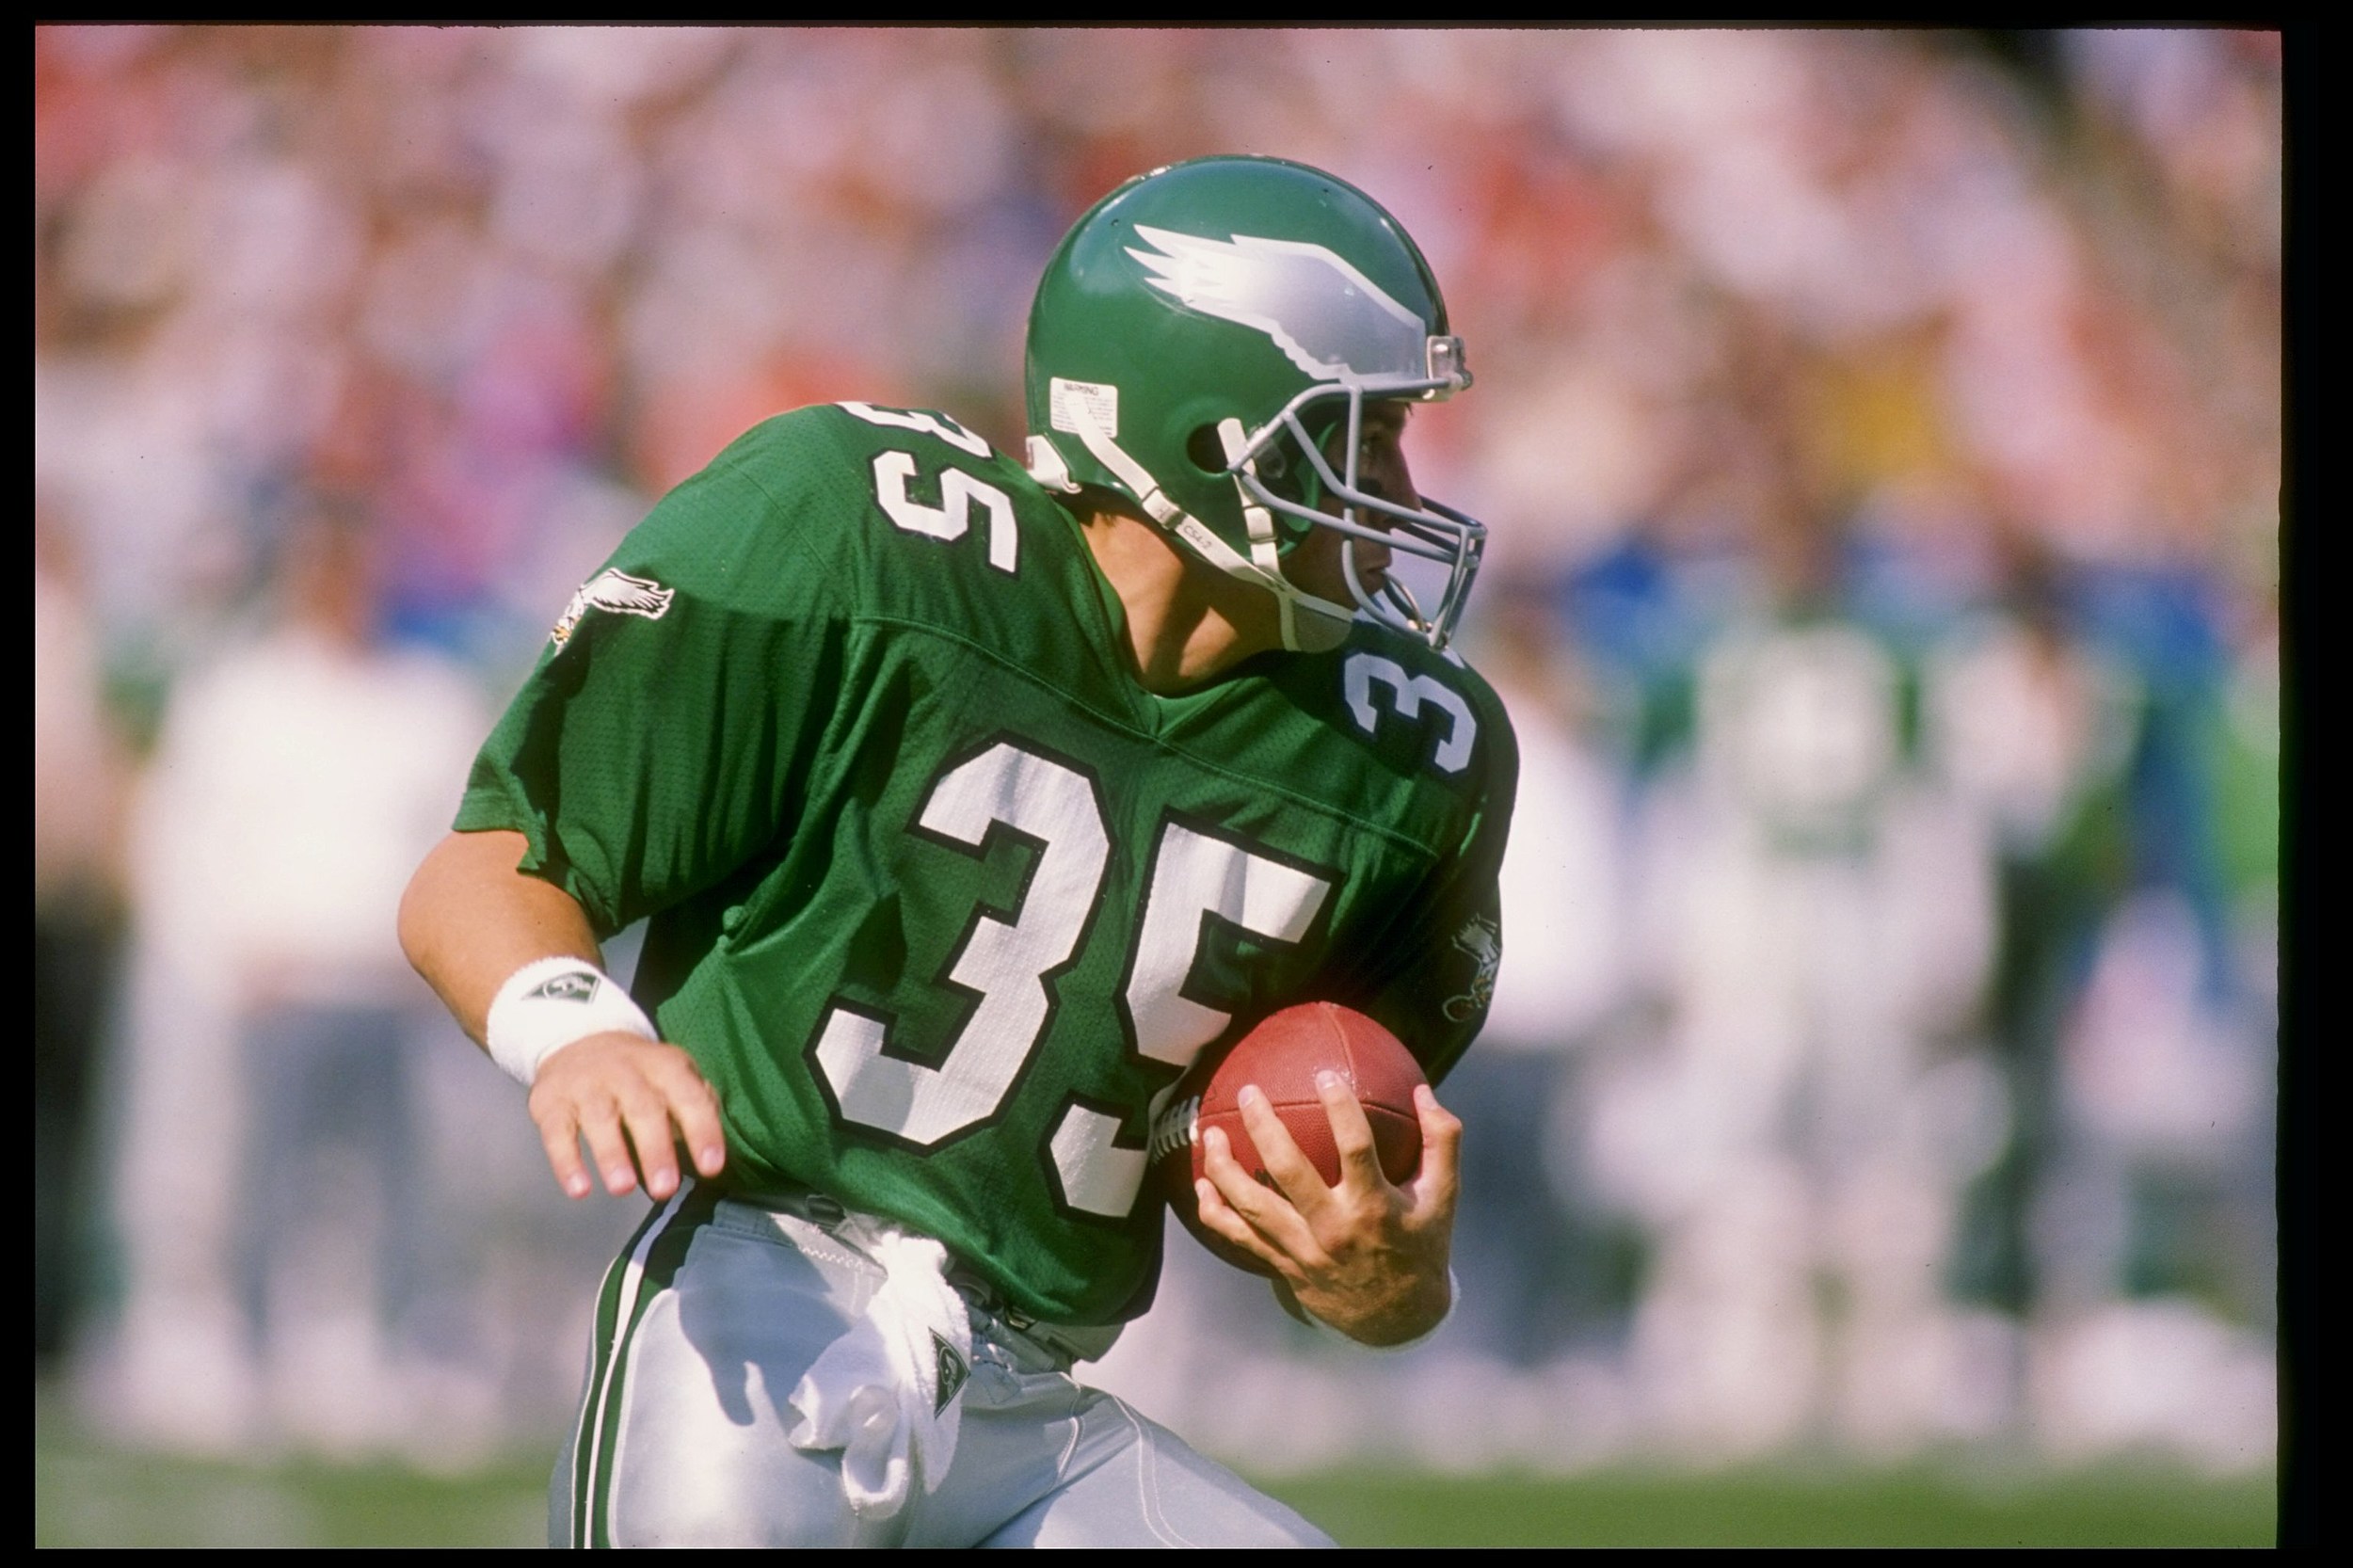 Philadelphia Eagles will bring back Kelly green jerseys, helmets